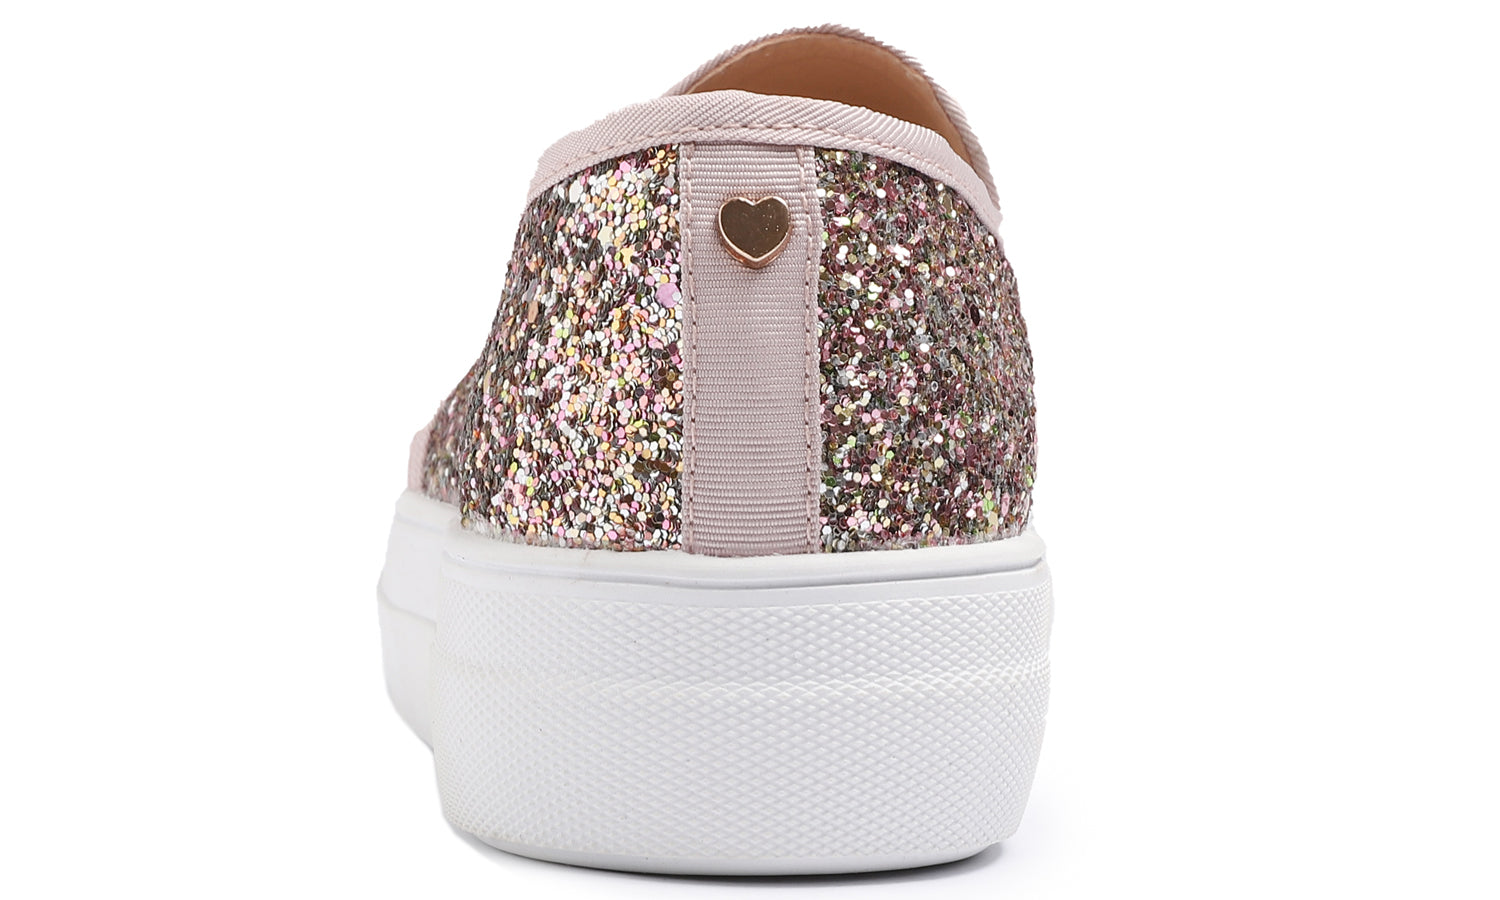 Feversole Women's Glitter Pink Gold Platform Slip On Sneaker Casual Flat Loafers